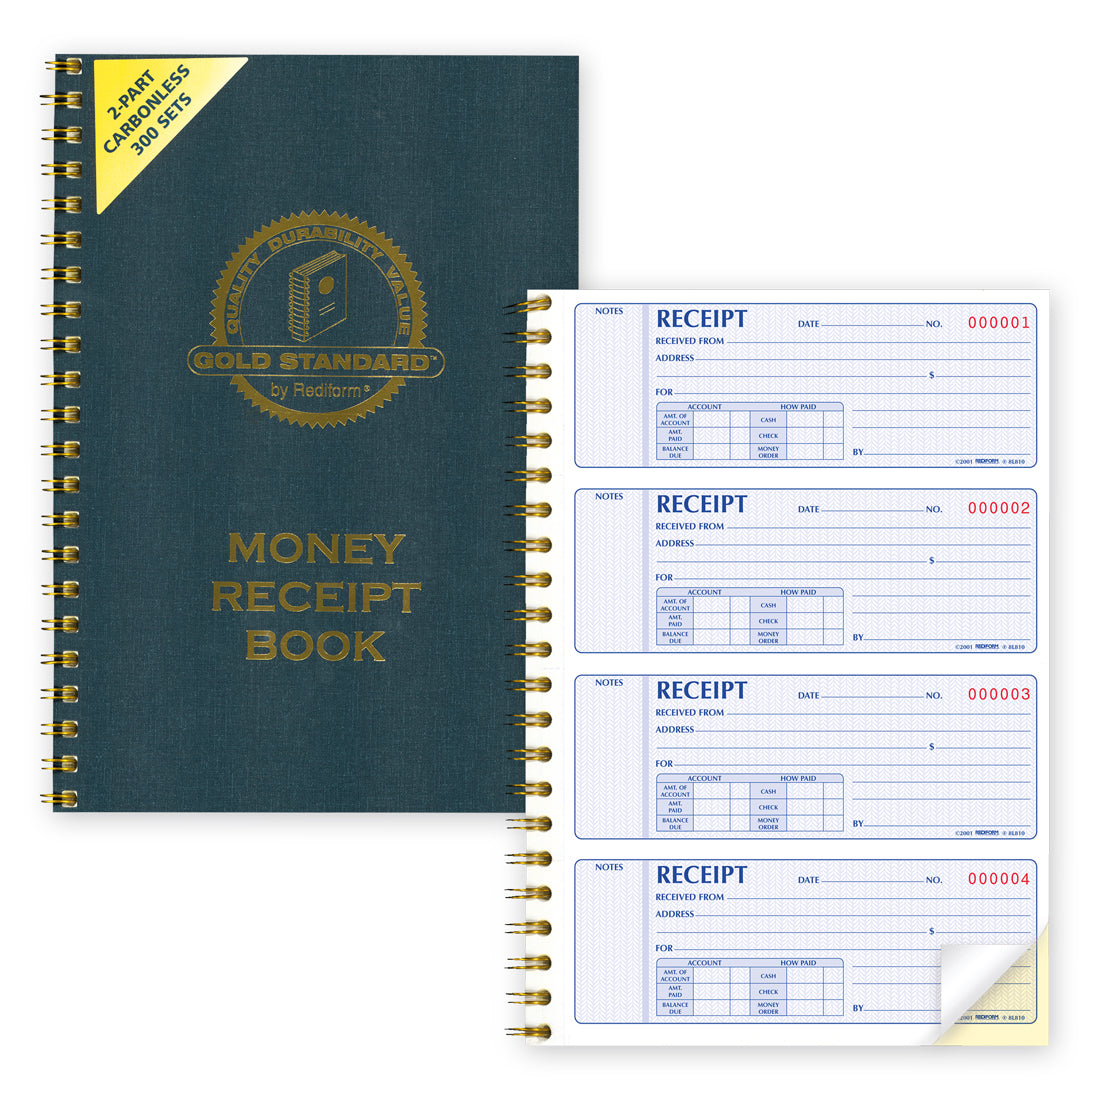 Gold Standard - Money Receipt Book 8L810